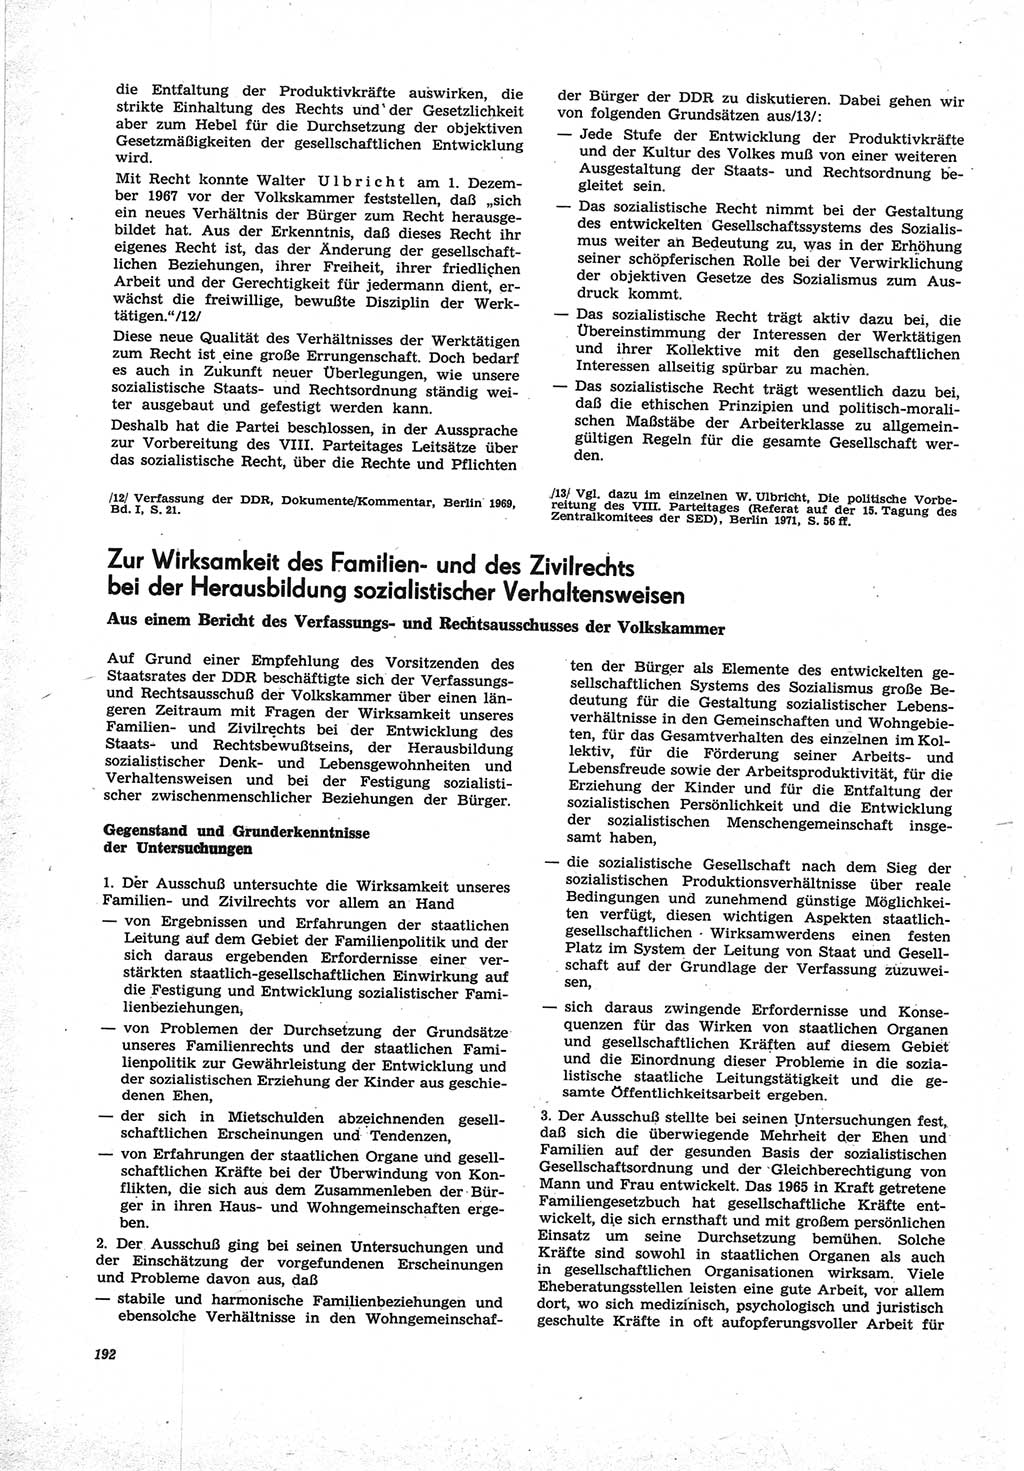 Neue Justiz (NJ), Zeitschrift für Recht und Rechtswissenschaft [Deutsche Demokratische Republik (DDR)], 25. Jahrgang 1971, Seite 192 (NJ DDR 1971, S. 192)